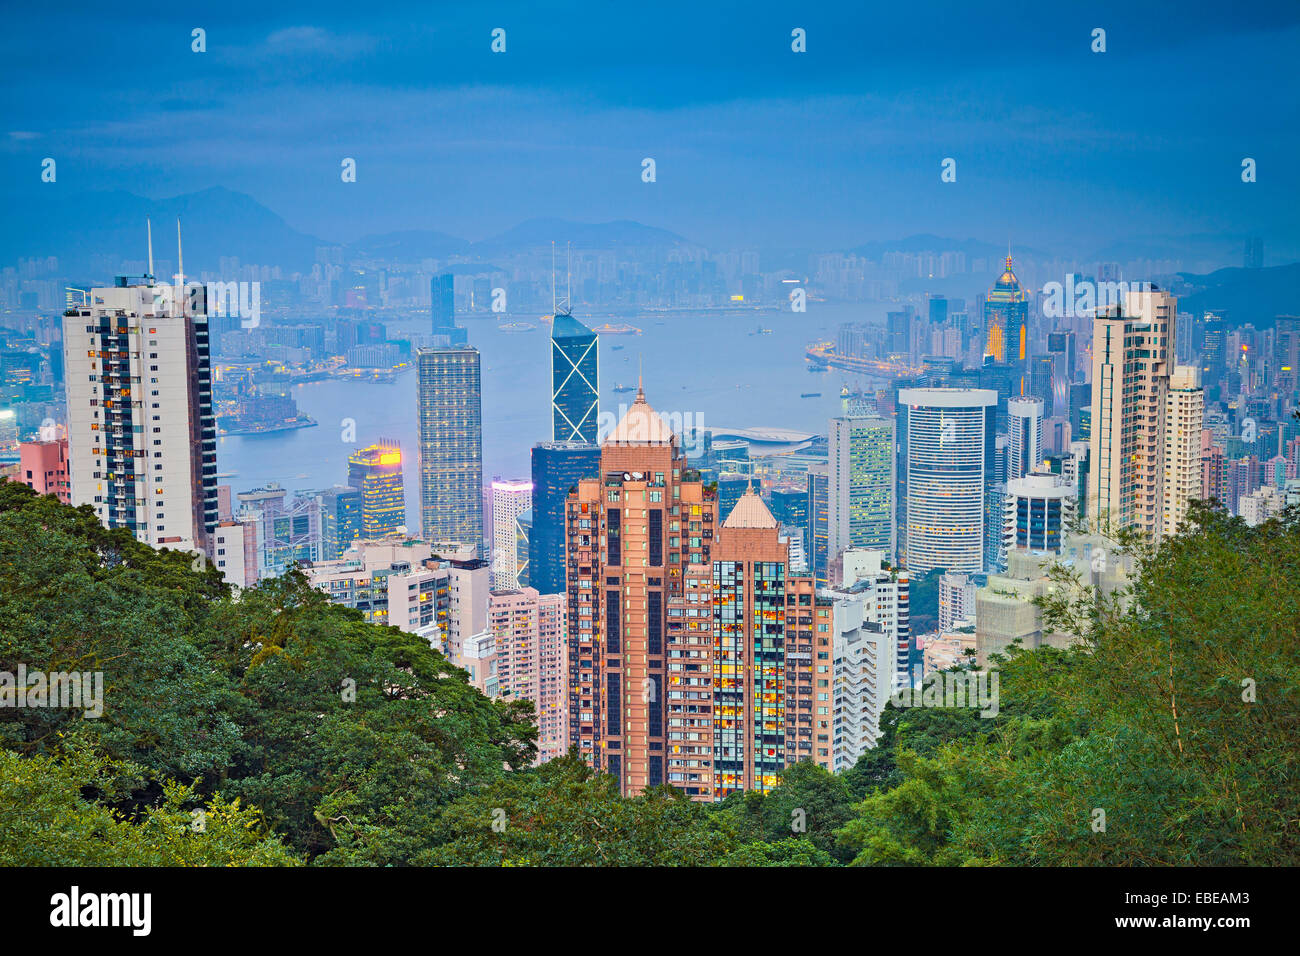 Hong Kong. Image of Hong Kong skyline view from Victoria Peak. Stock Photo